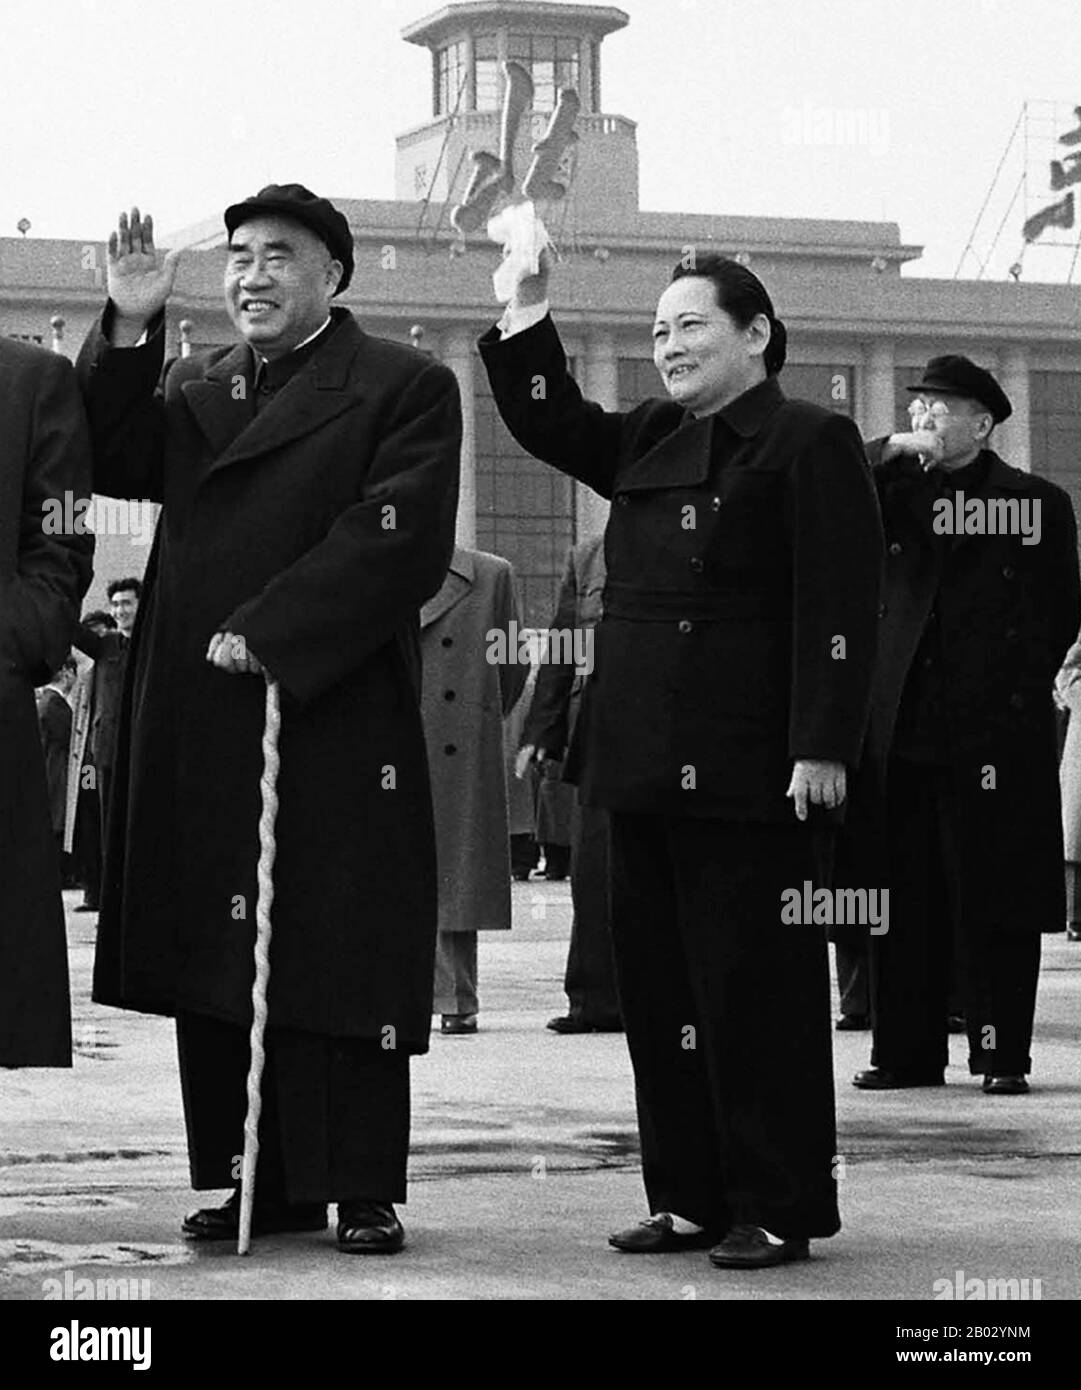 Zhu De war ein kommunistischer chinesischer Militärführer und Staatsmann. Er gilt als Gründer der chinesischen Roten Armee (dem Vorläufer der Volksbefreiungsarmee) und Taktiker, der den Sieg der Volksrepublik China während des chinesischen Bürgerkrieges entworfen hat. Soong Ch'ing-ling, Shanghai, 1920 (pinyin: Song Qingling, 27. Januar 1893 - 29. Mai 1981), auch bekannt als Madame Sun Yat-sen, war eine der drei Soong-Schwestern, die zusammen mit ihren Ehemännern zu den bedeutendsten politischen Persönlichkeiten Chinas des frühen 20. Jahrhunderts gehörten. Sie war stellvertretende Vorsitzende der Volksrepublik Stockfoto